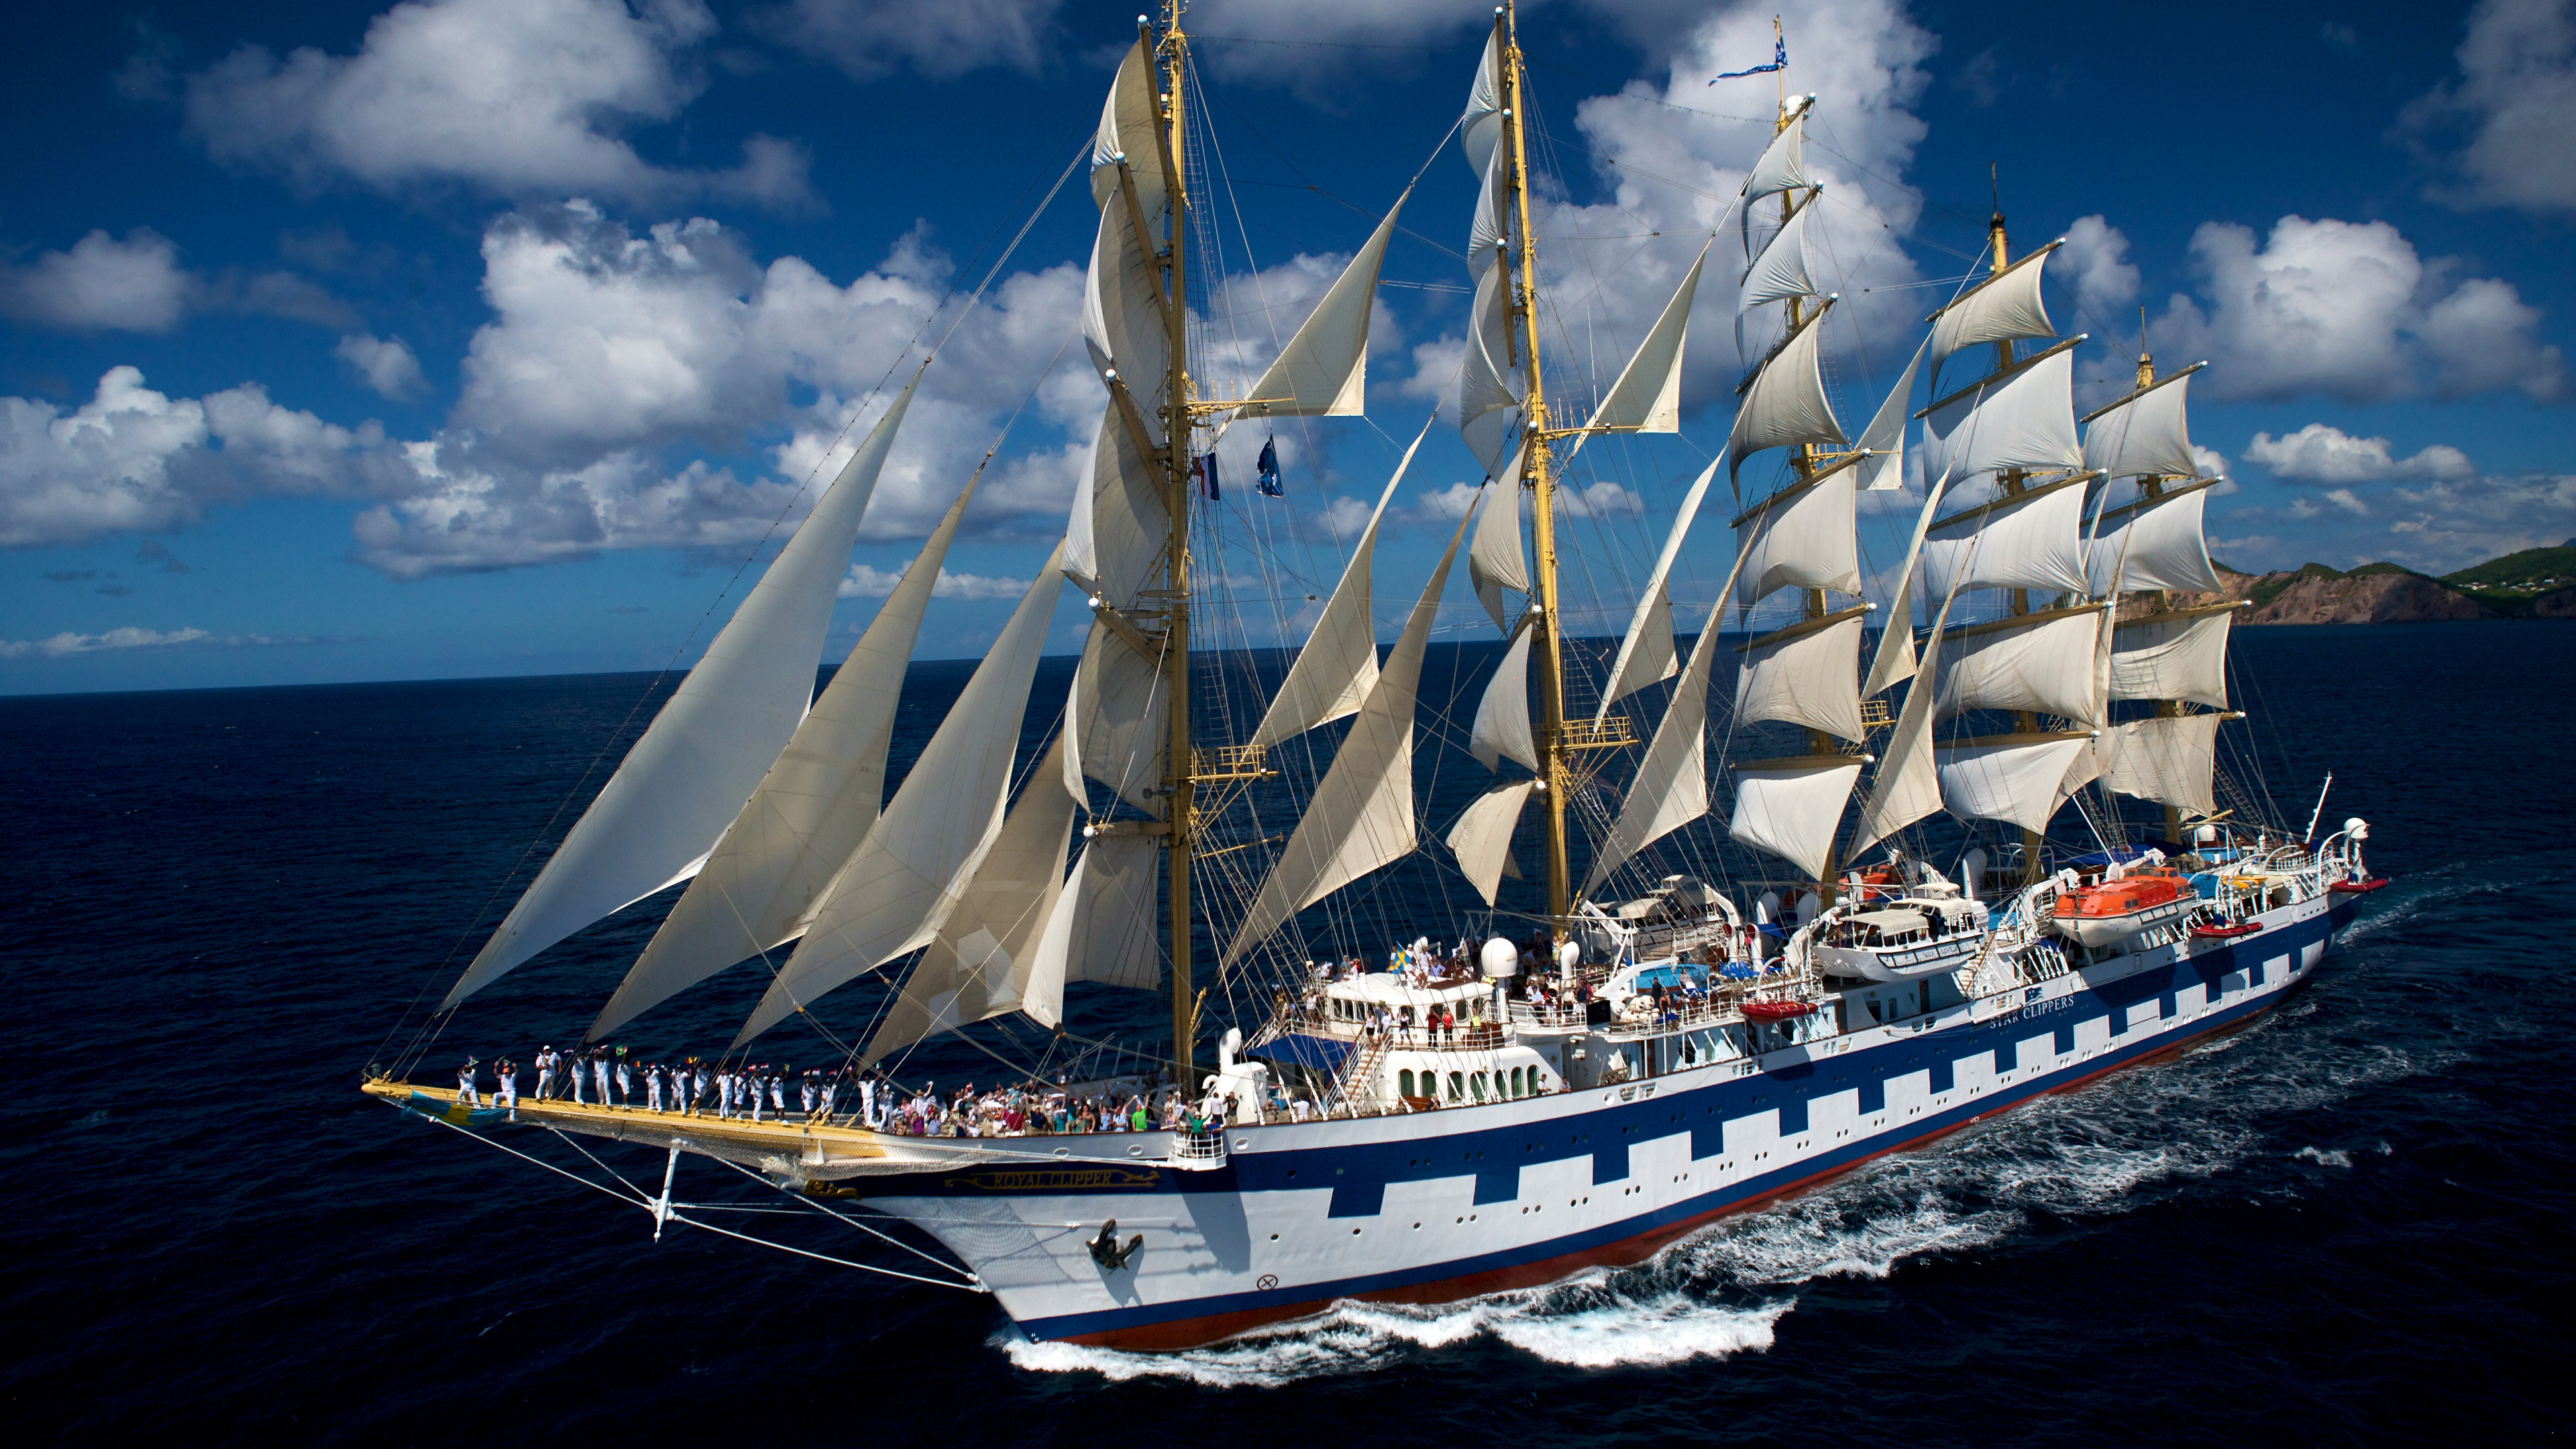 游船, Barquentine, 高船, 帆船, 桅杆 壁纸 3840x2160 允许